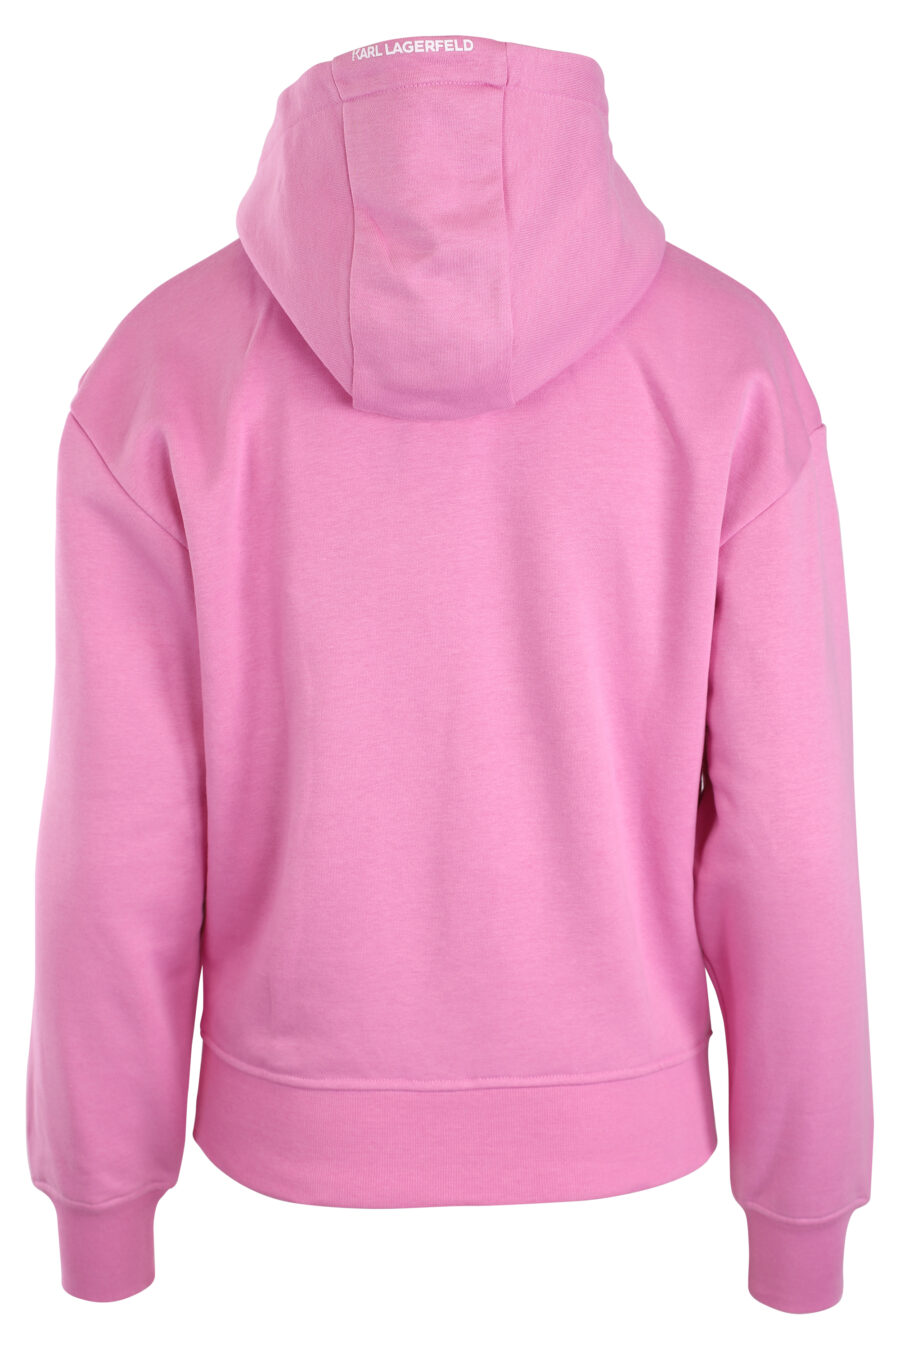 Sudadera con capucha rosa y logo monograma - IMG 3285